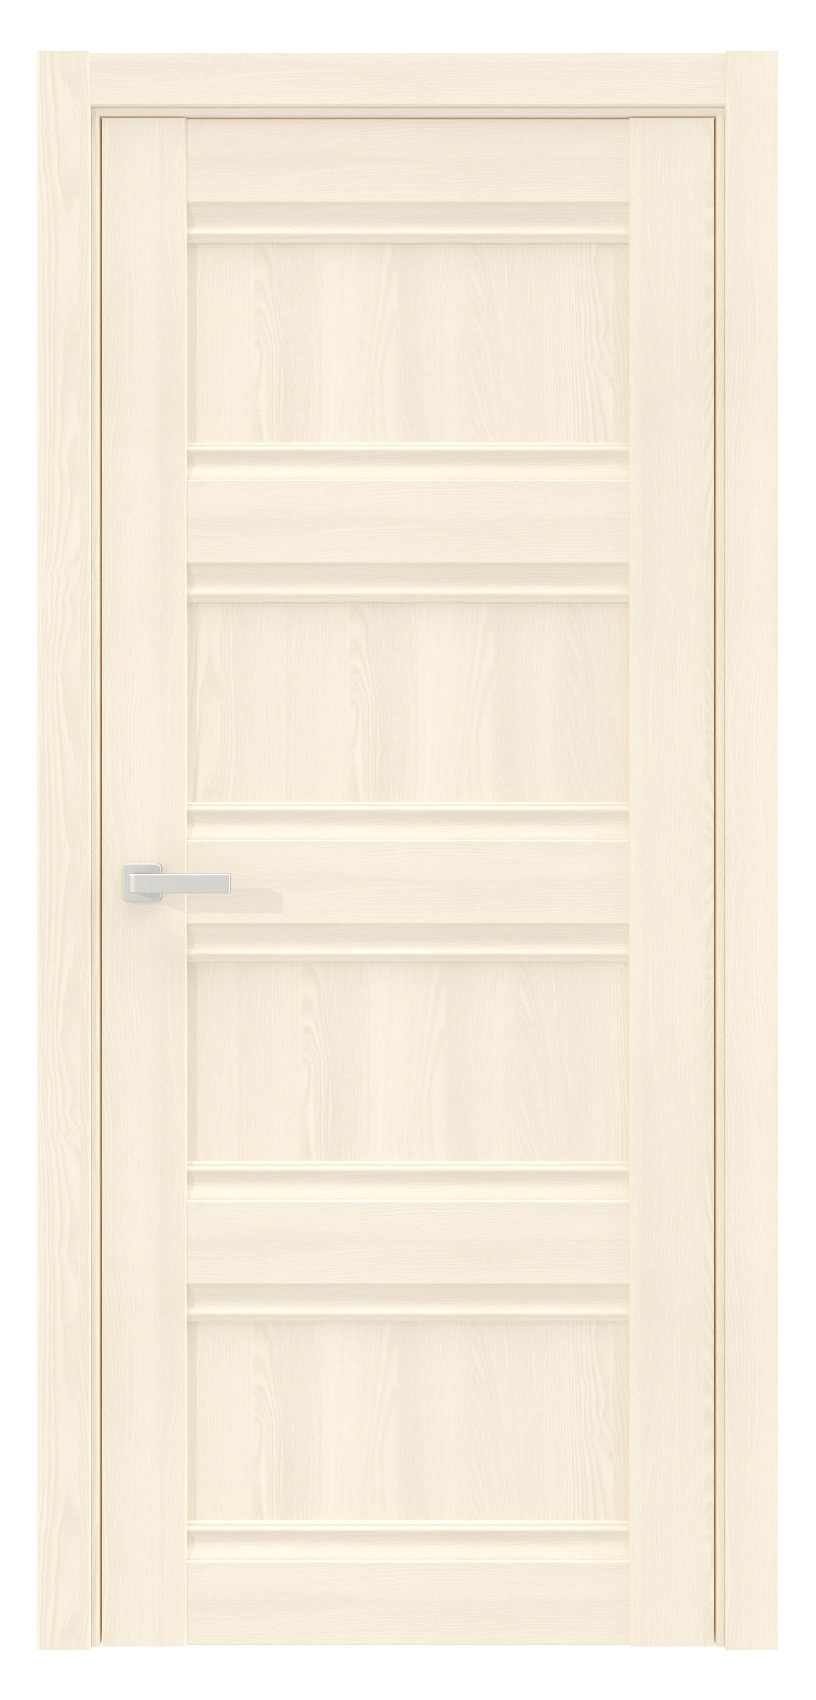 Questdoors Межкомнатная дверь QS7, арт. 17570 - фото №1